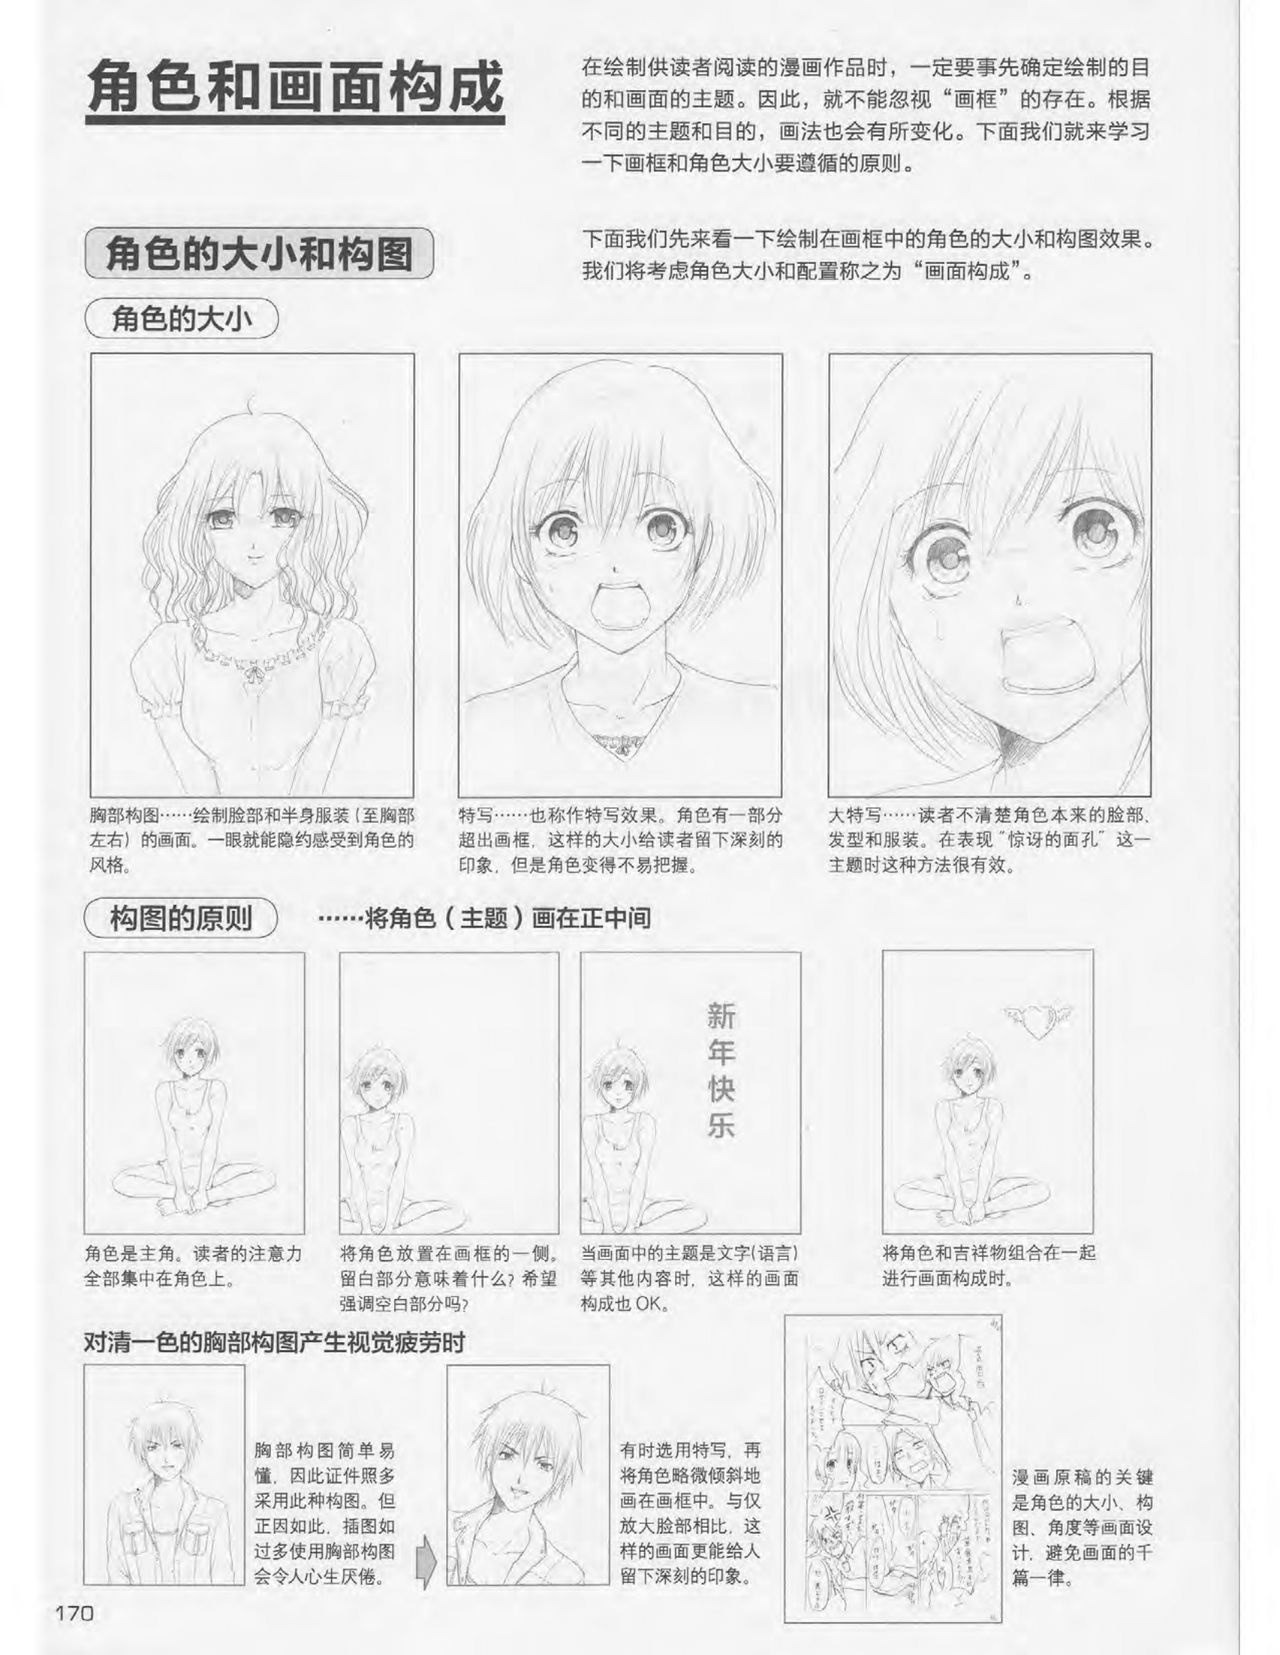 Japanese Manga Master Lecture 3: Lin Akira and Kakumaru Maru Talk About Glamorous Character Modeling 169